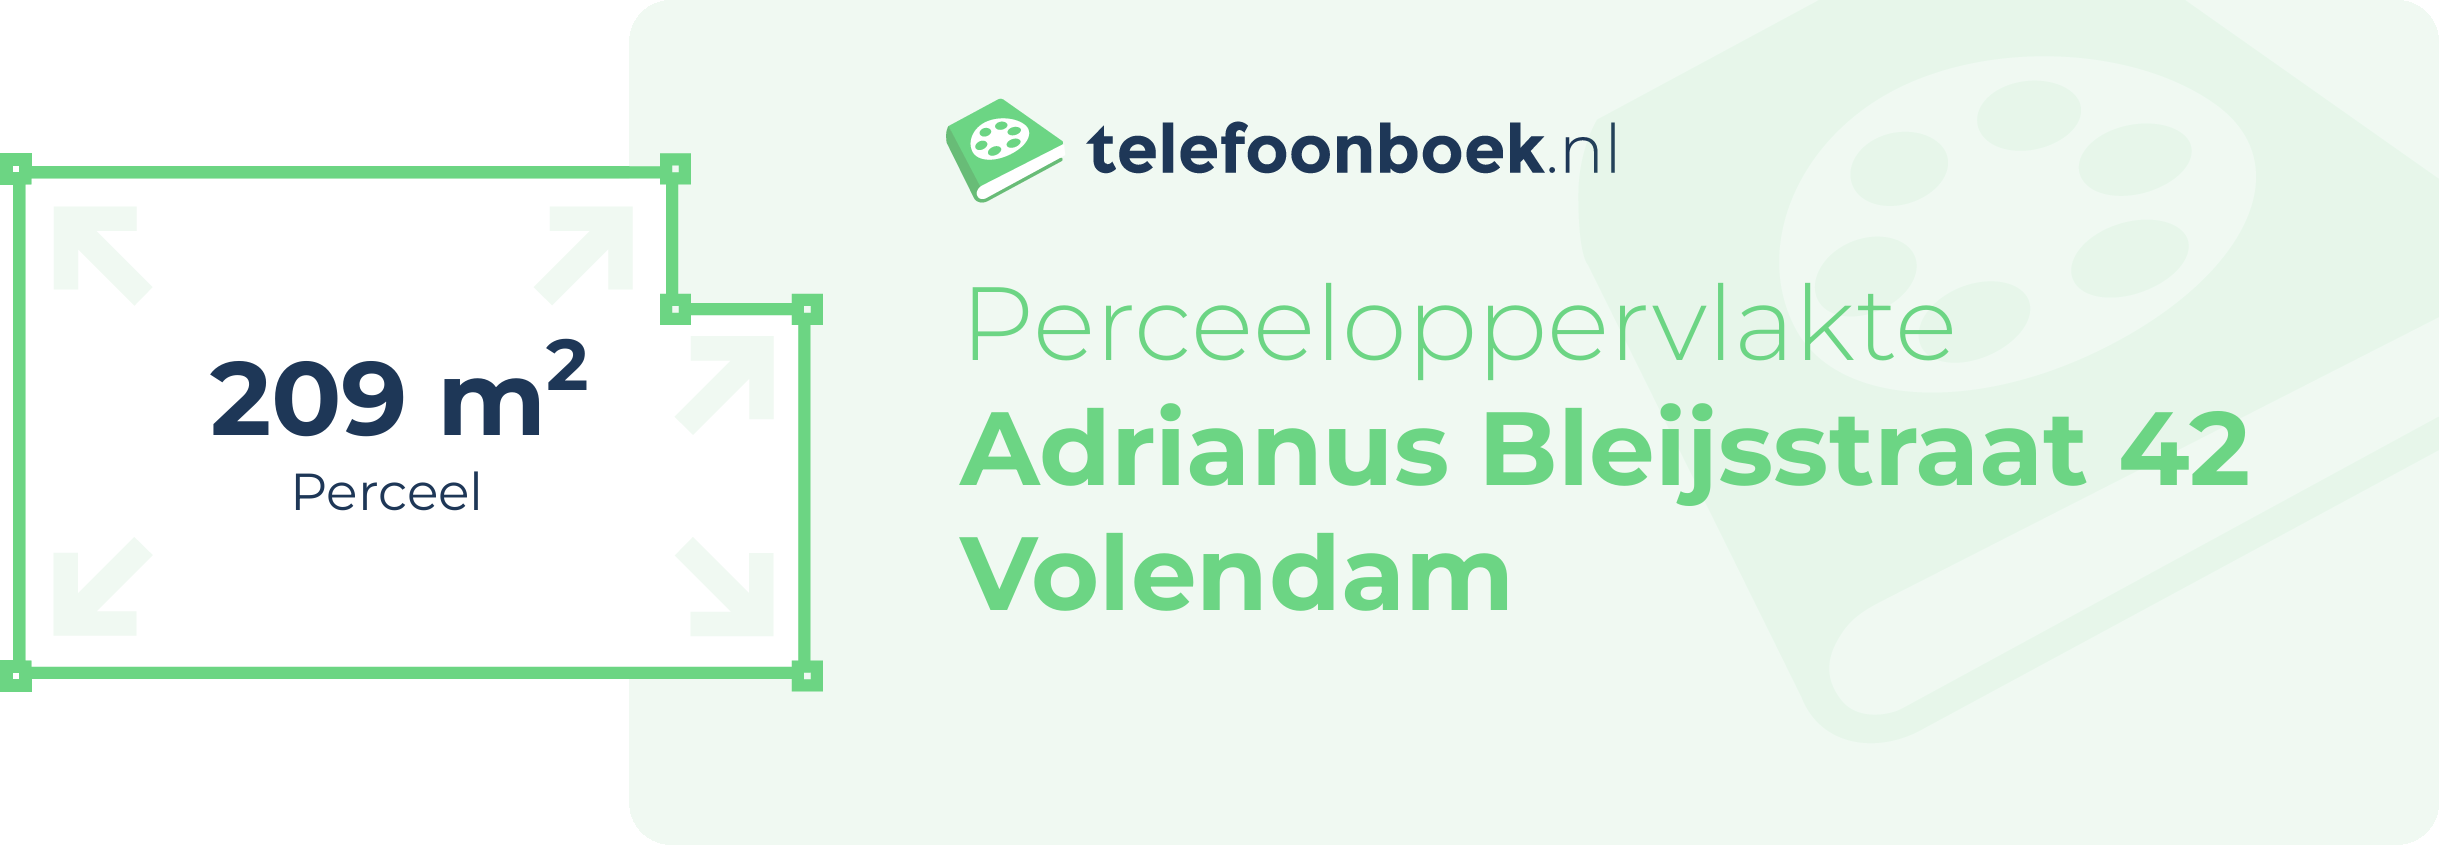 Perceeloppervlakte Adrianus Bleijsstraat 42 Volendam